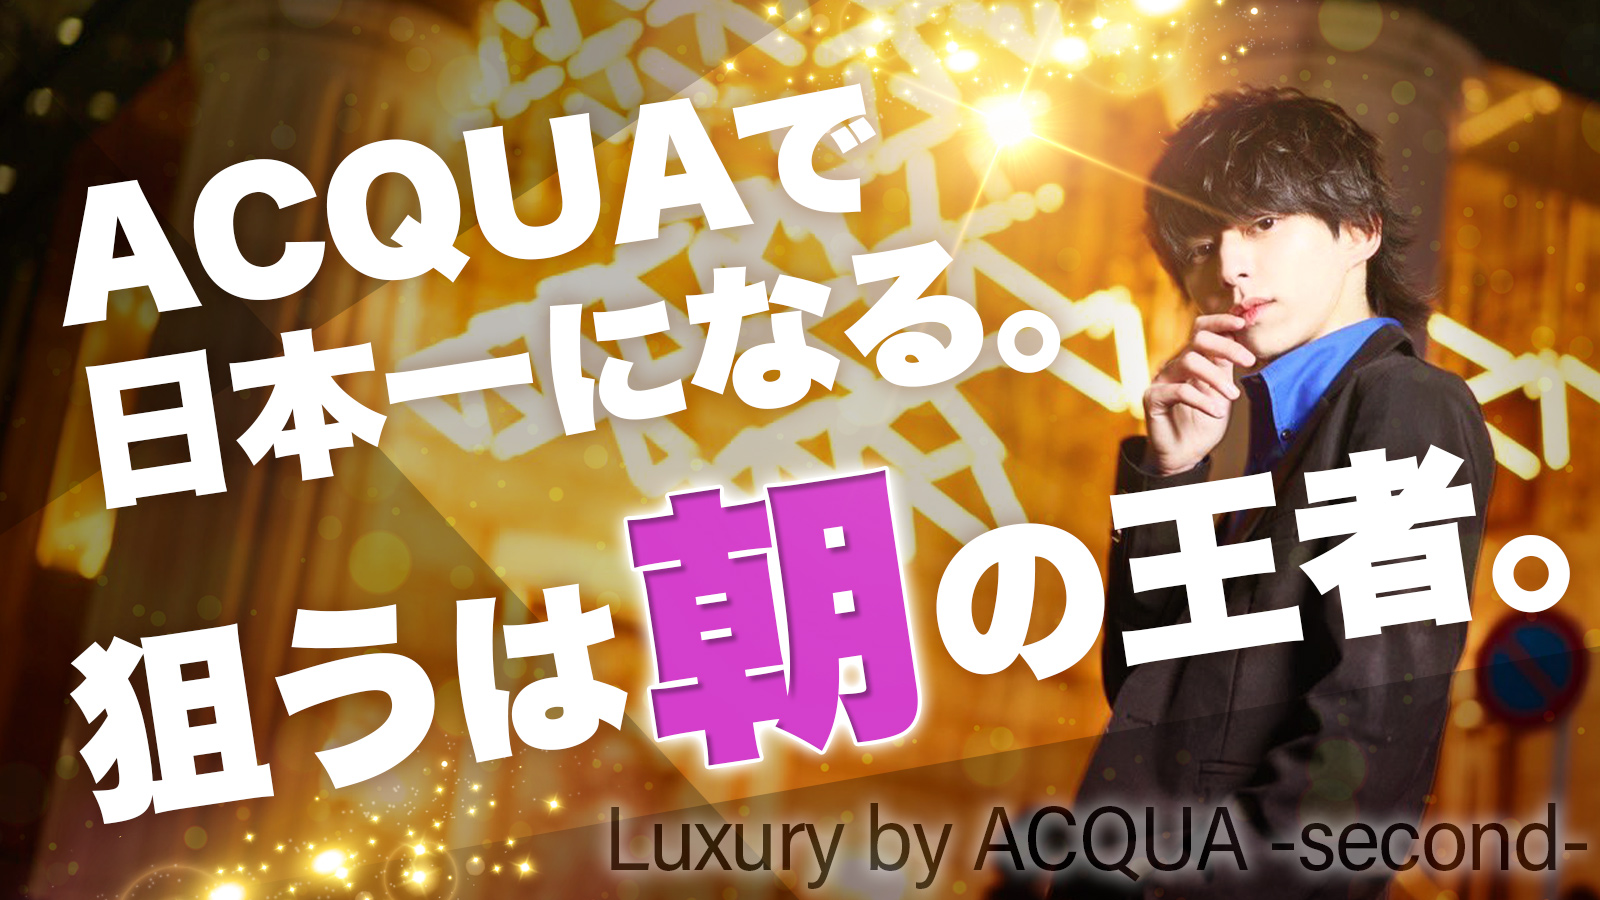 Luxury by ACQUA -second-